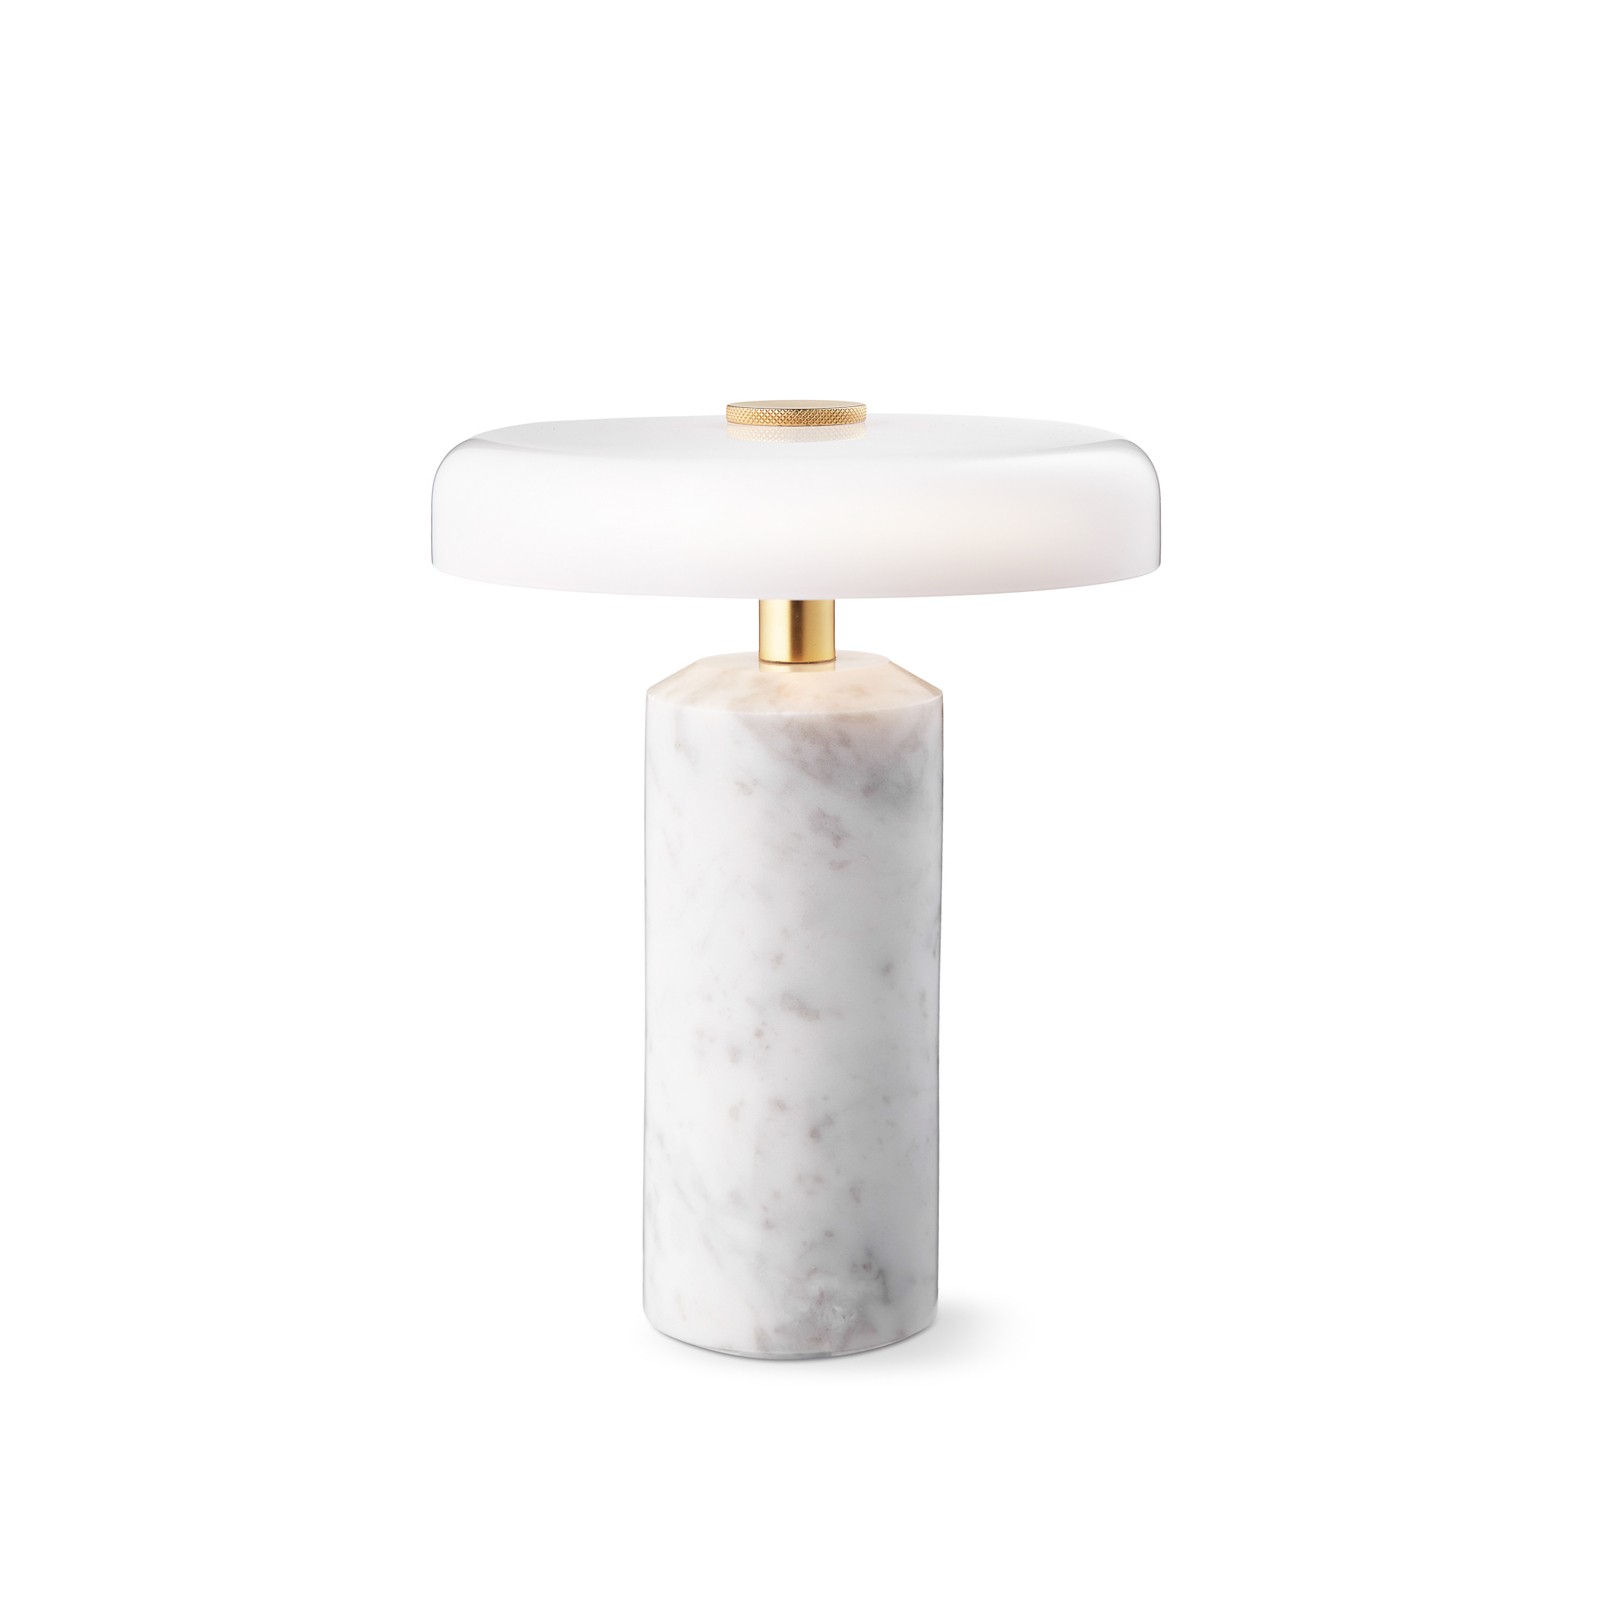 Trip LED-ladattava pöytävalaisin, valkoinen / valkoinen, marmori, lasi,